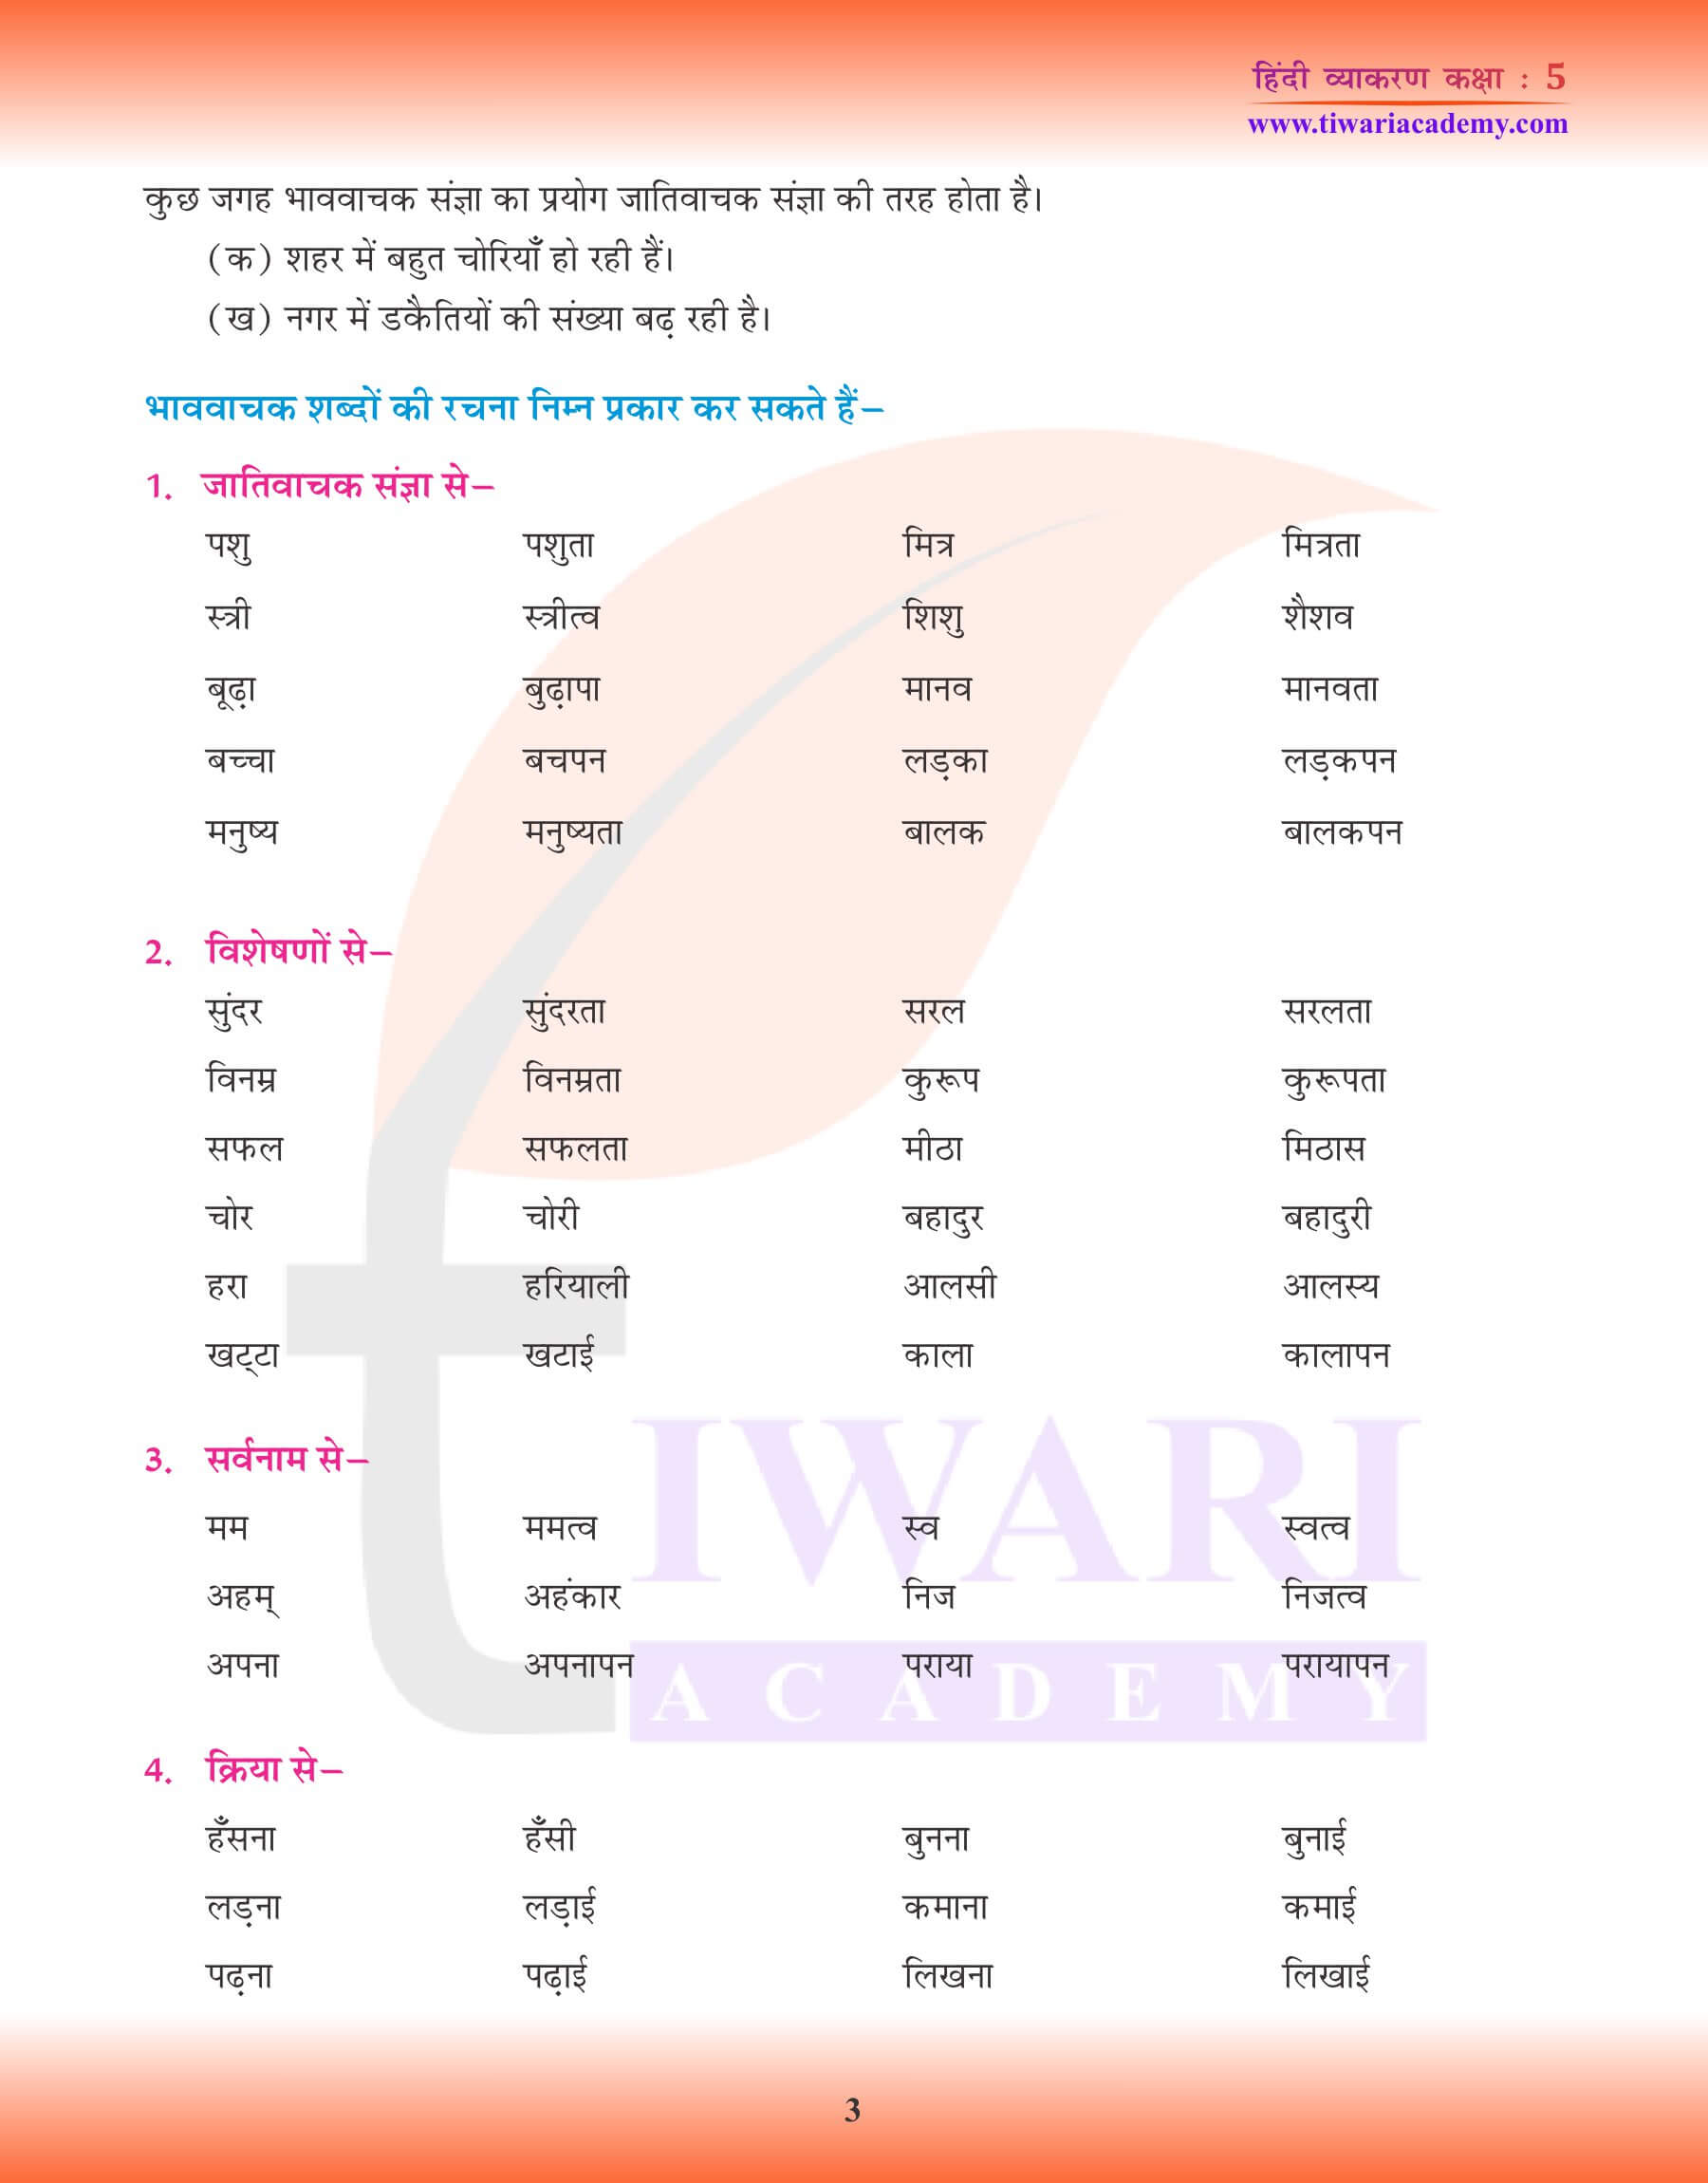 कक्षा 5 हिंदी व्याकरण में संज्ञा के भेद